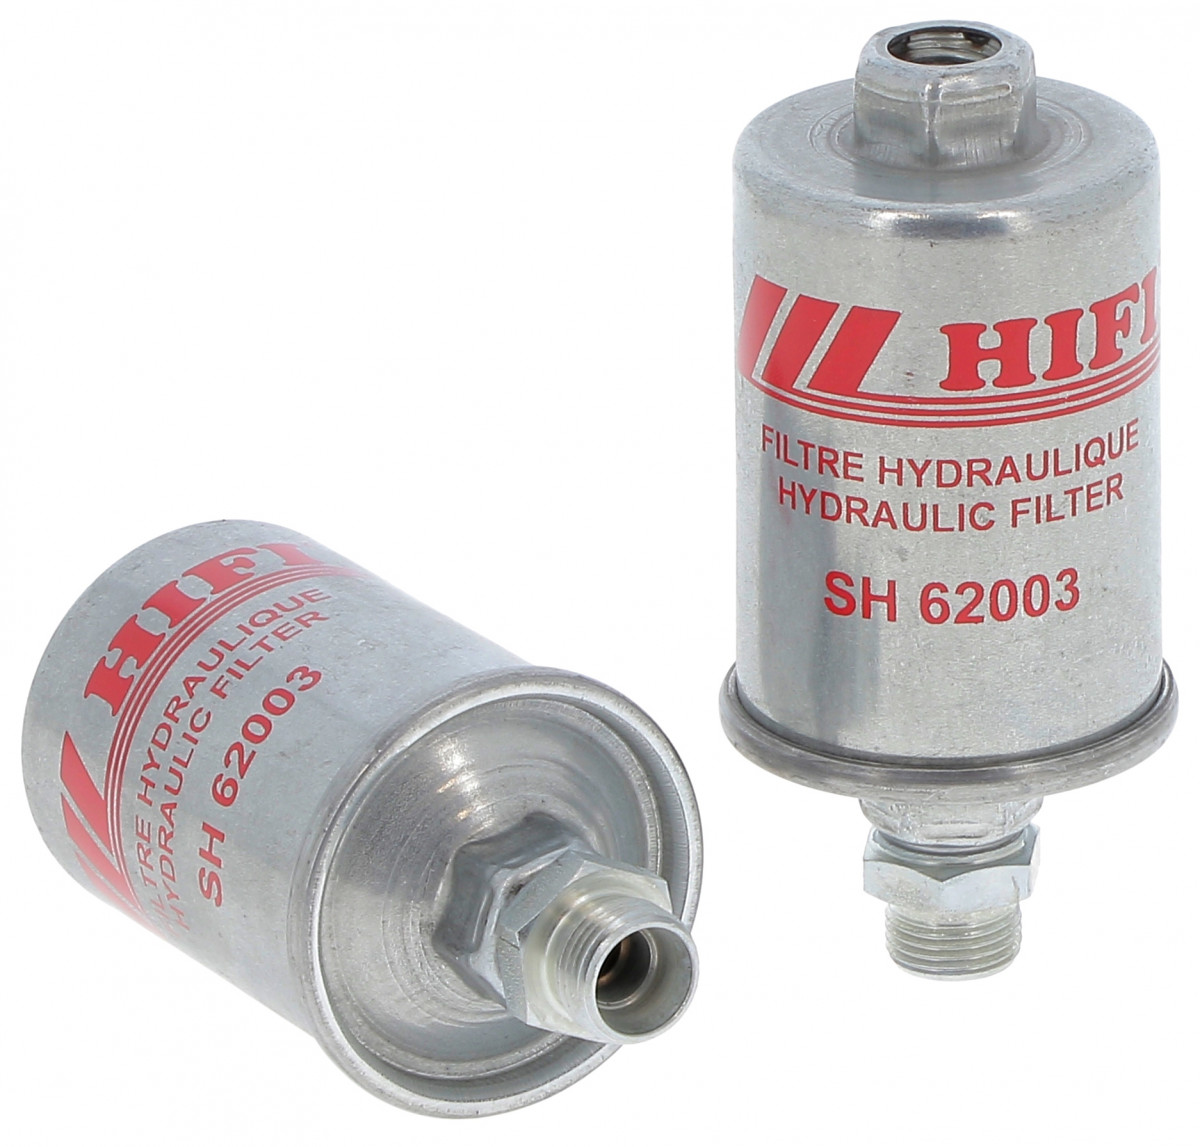 Filtr hydrauliczny  SH 62003 do JOHN DEERE 2850